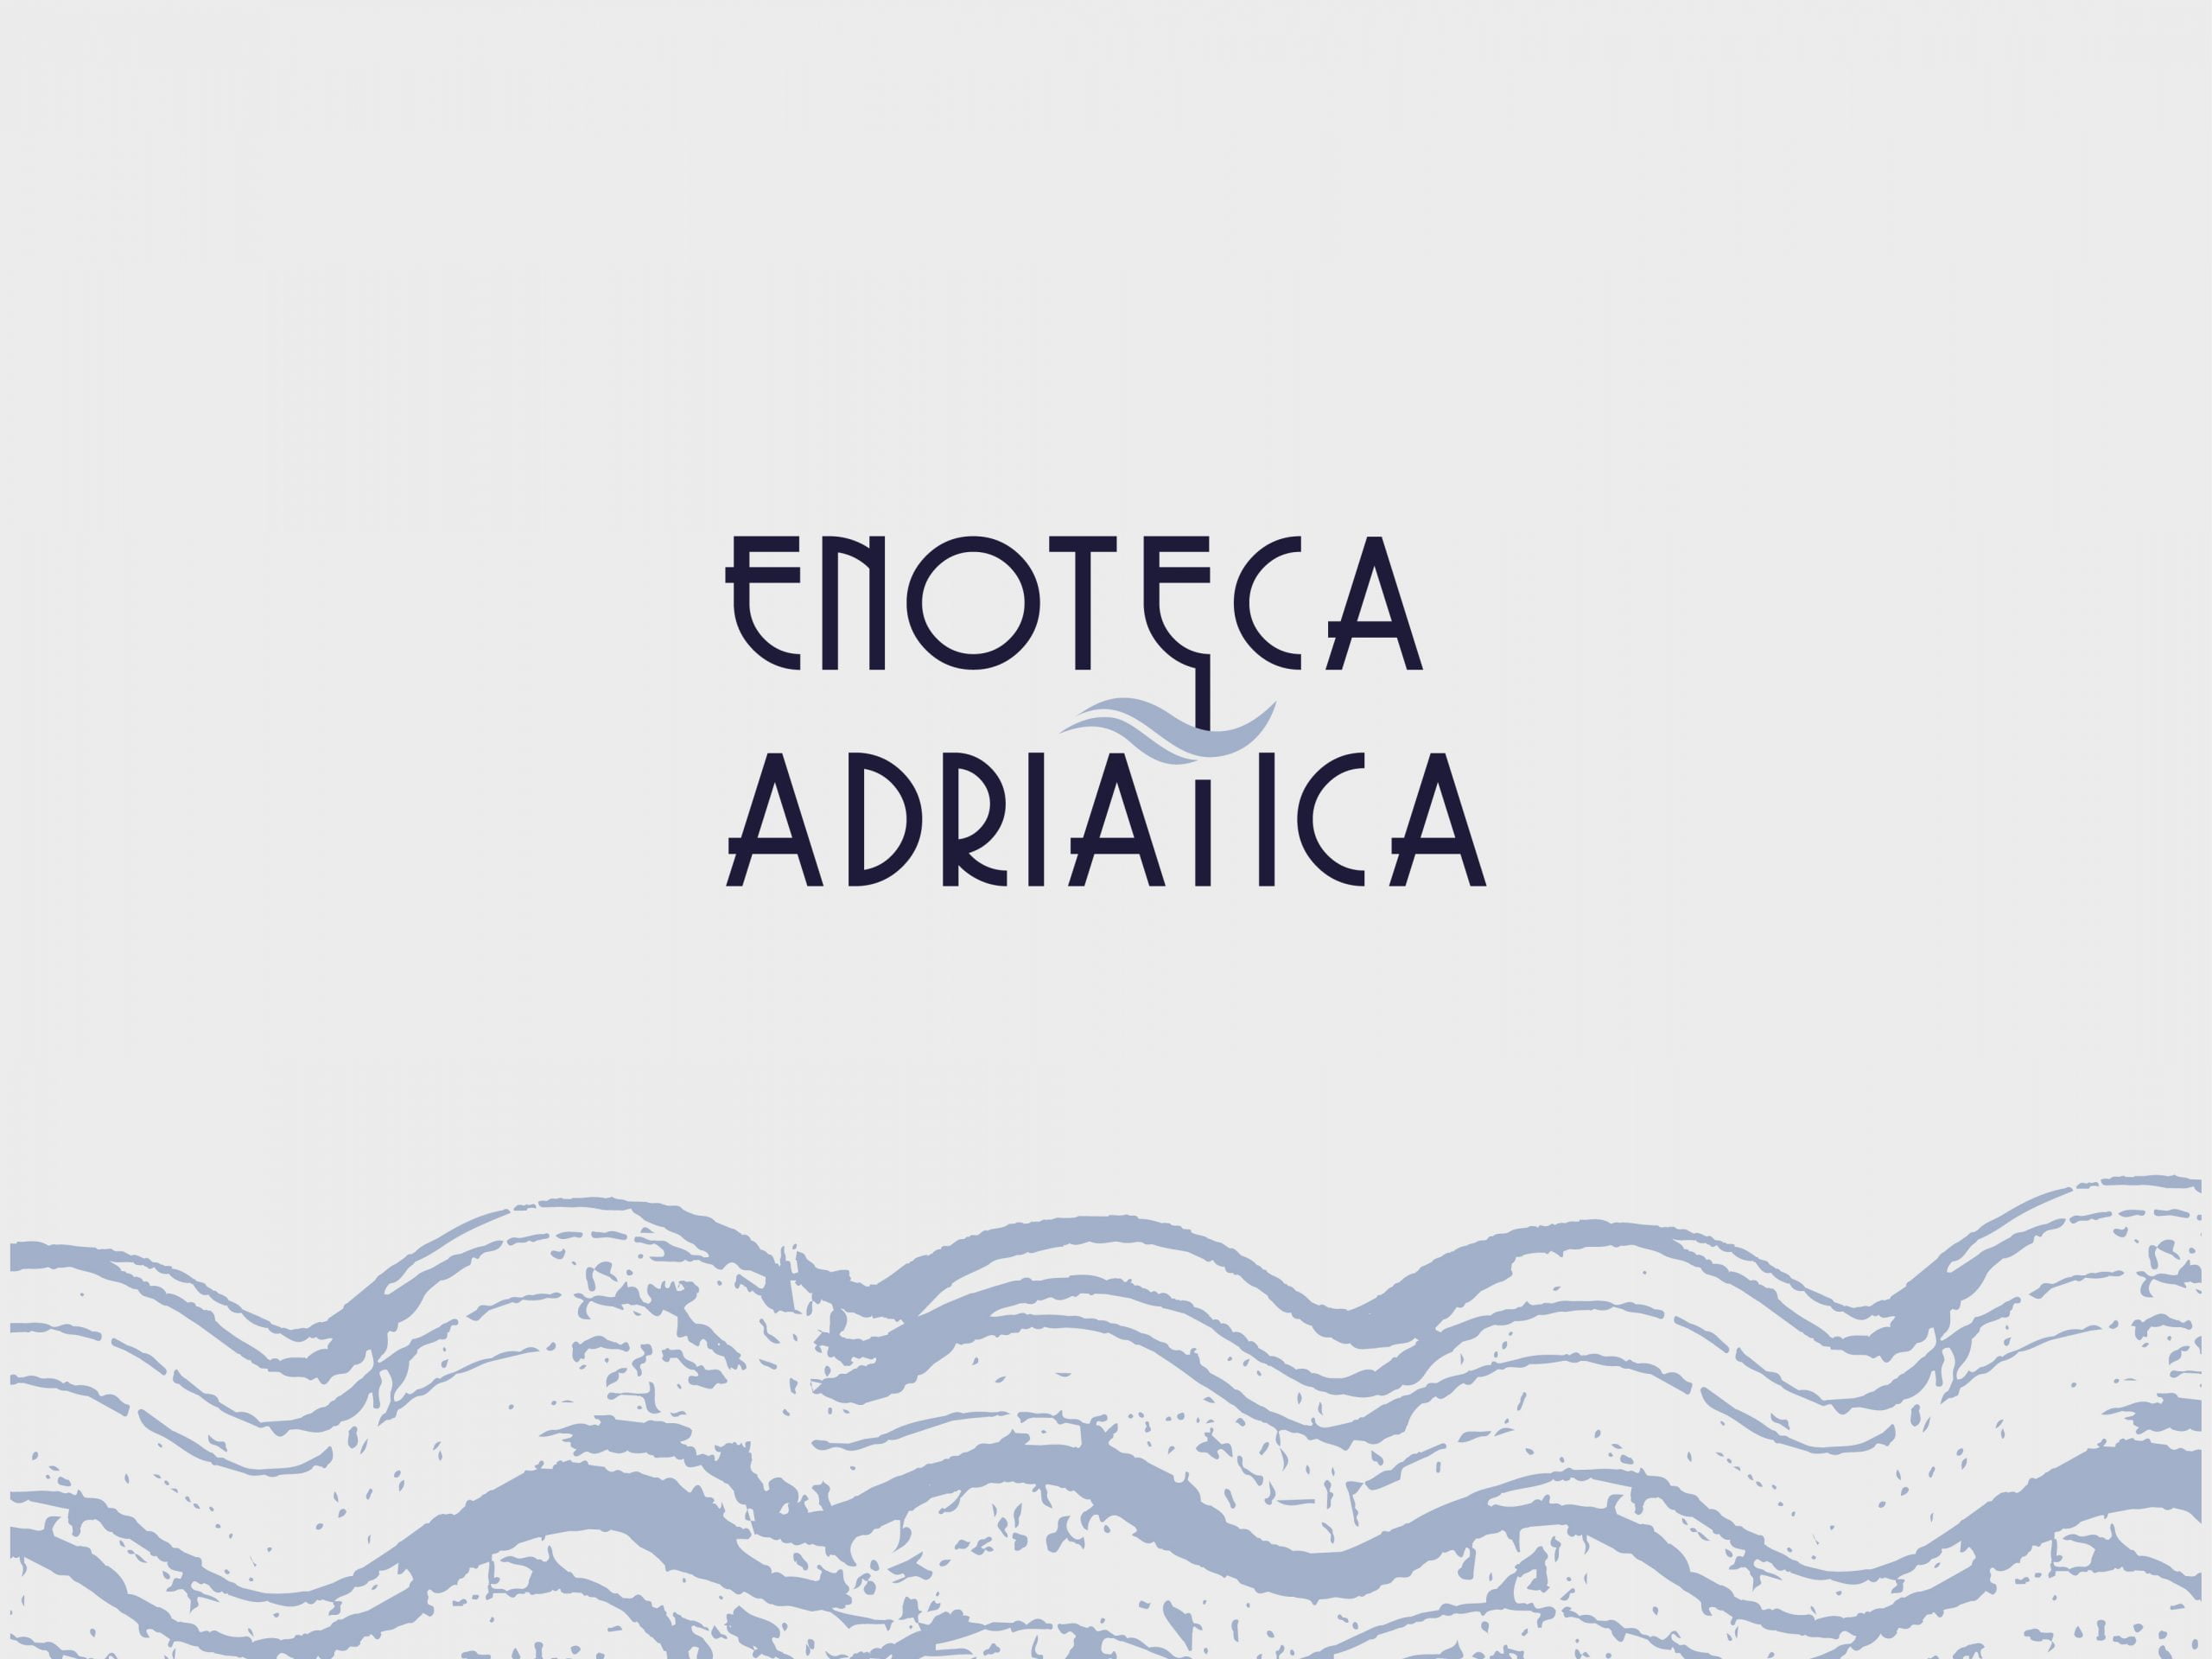 Enoteca Adriatica